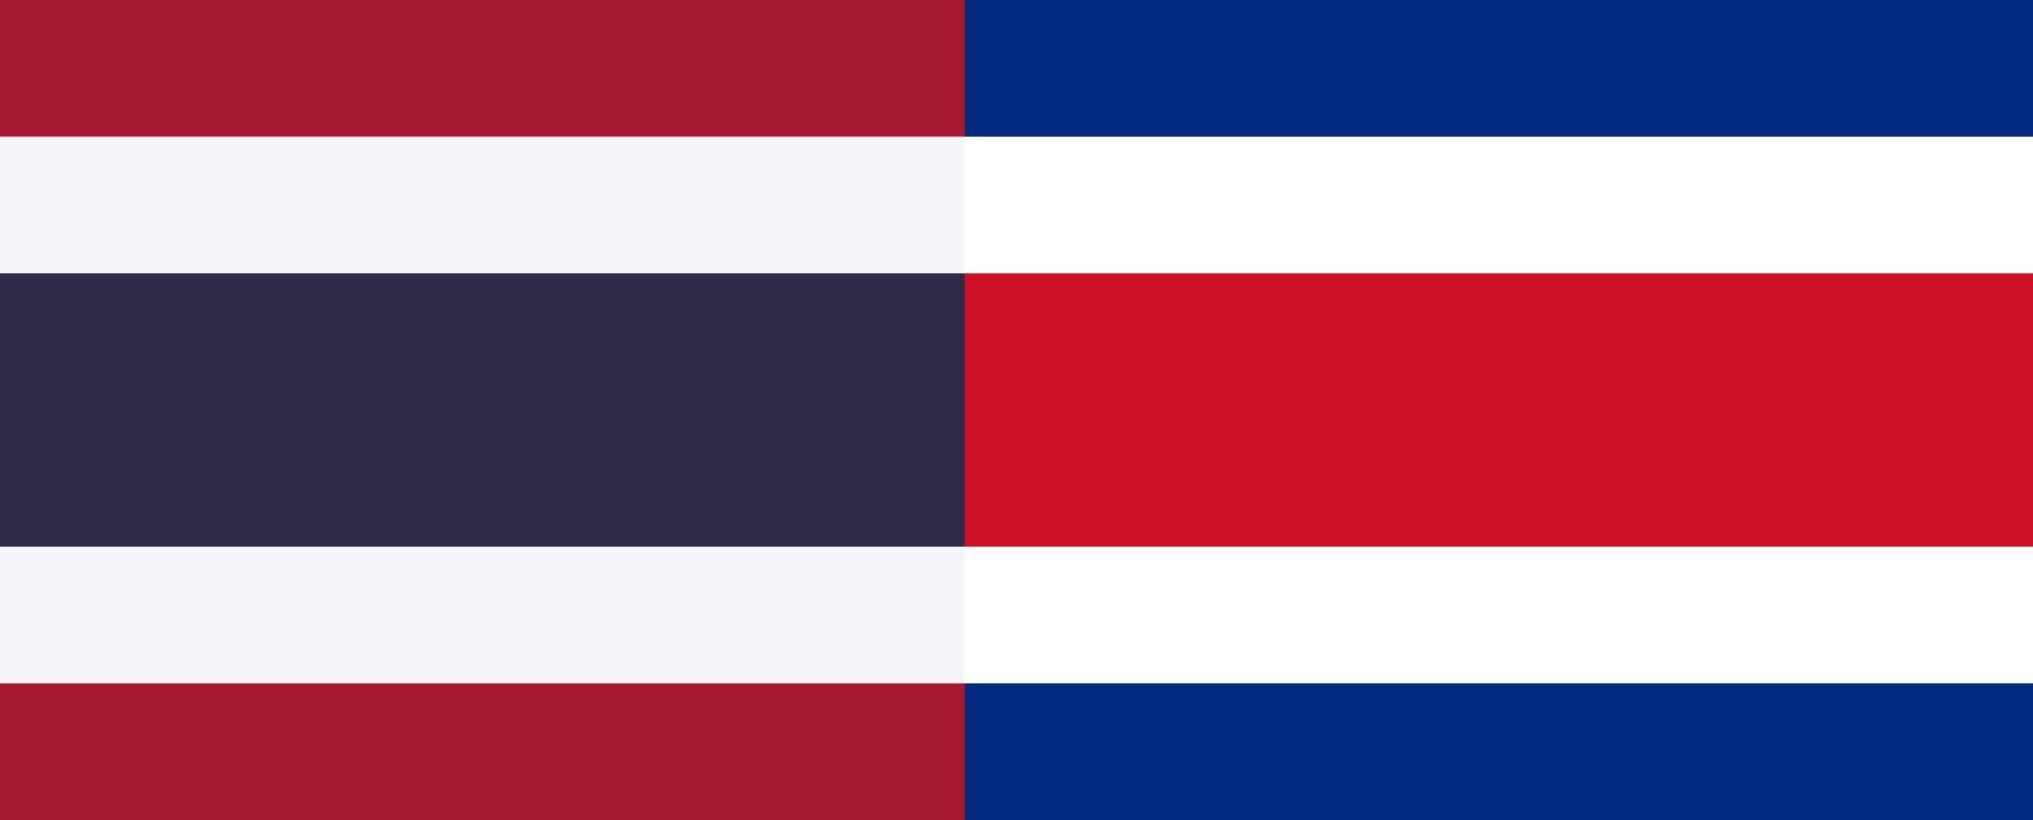 ธงชาติไทยกับธงชาติคอสตาริกา